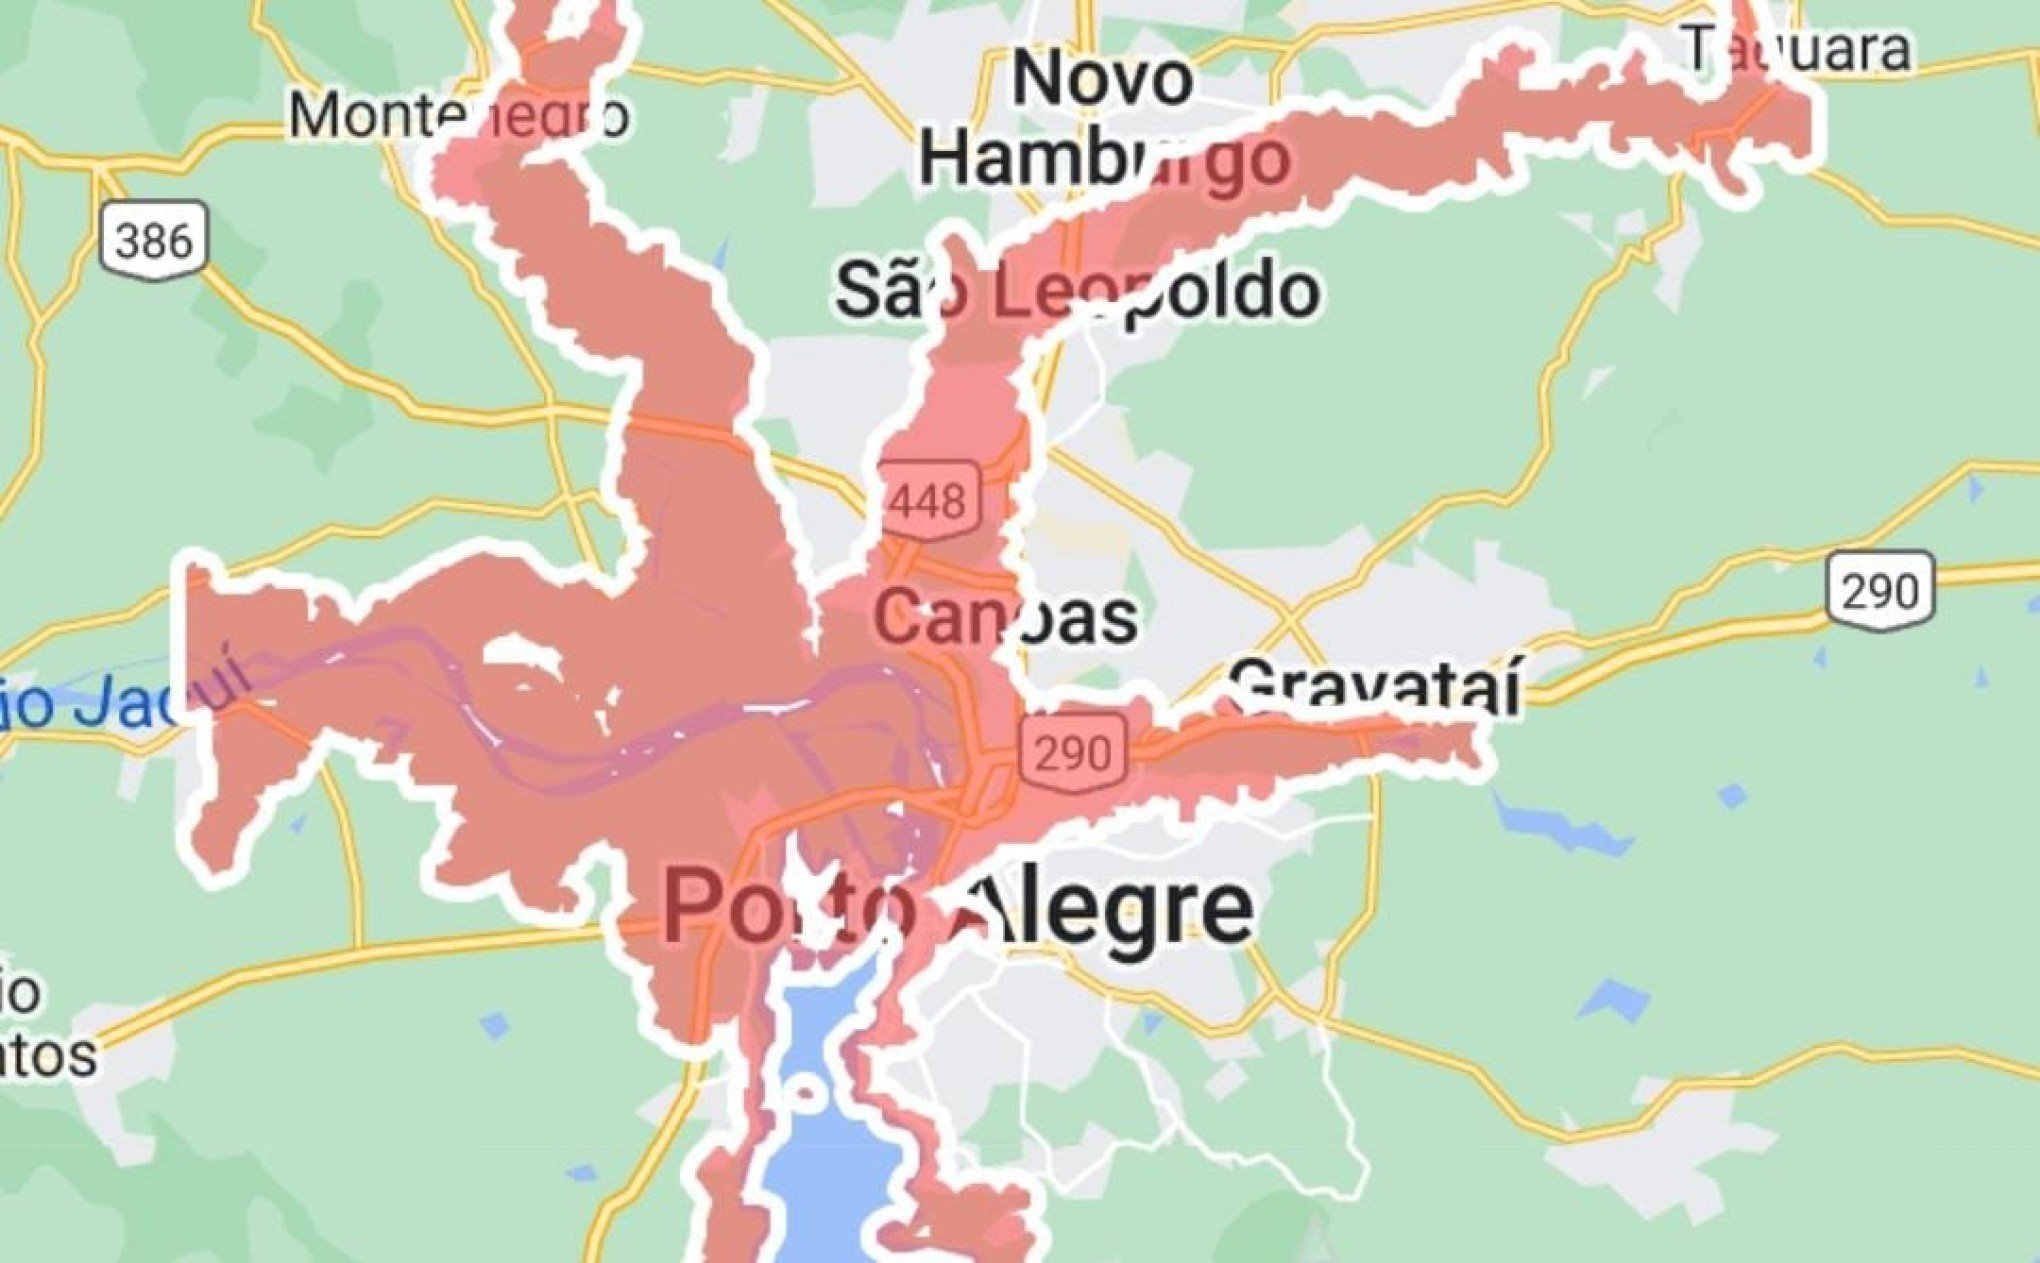 CATÁSTROFE NO RS: Mapa interativo mostra prováveis áreas de risco na Grande Porto Alegre